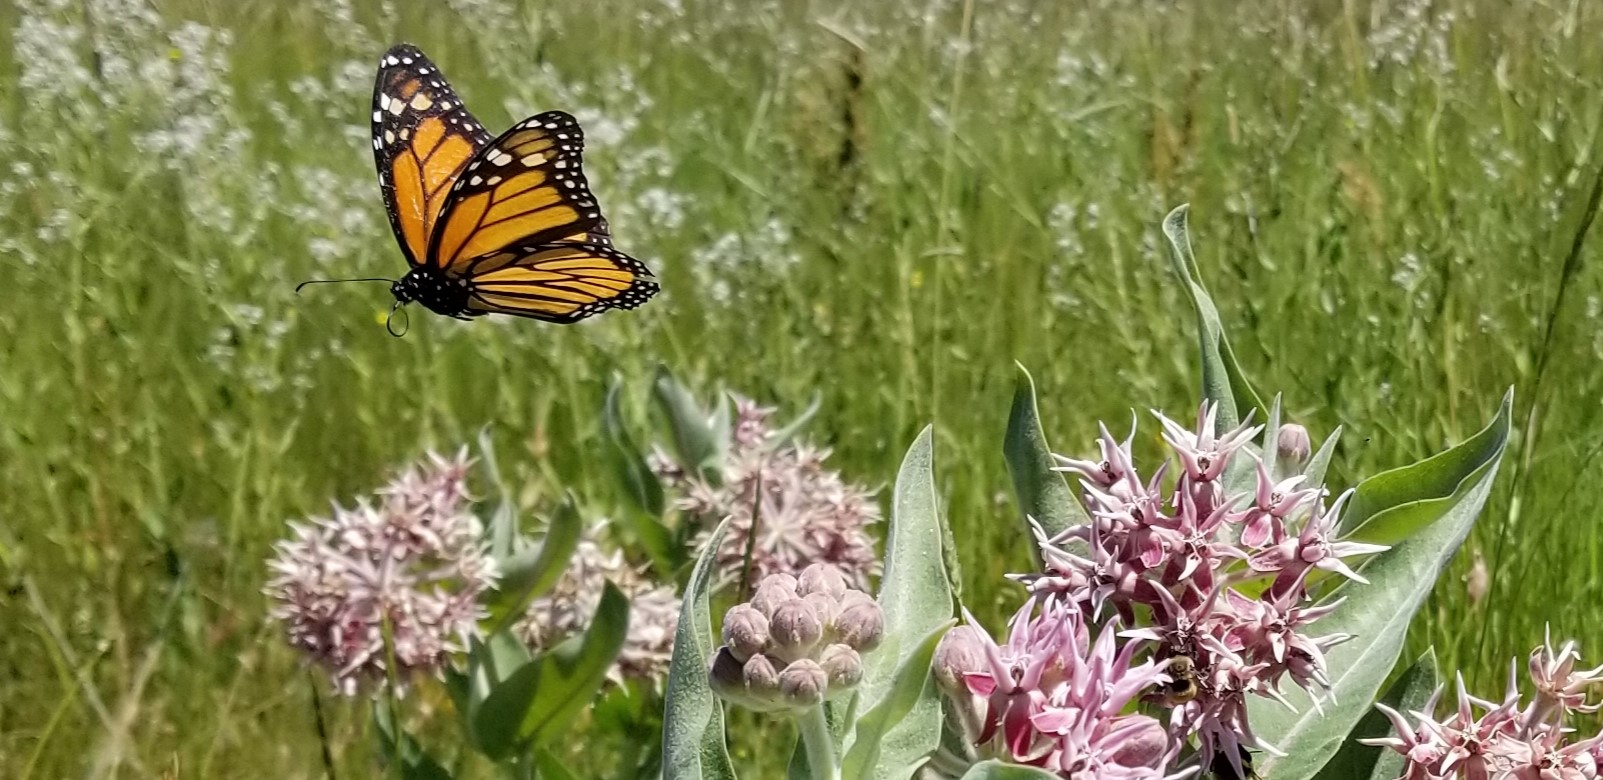 "Monarch flying over showy milkweed"